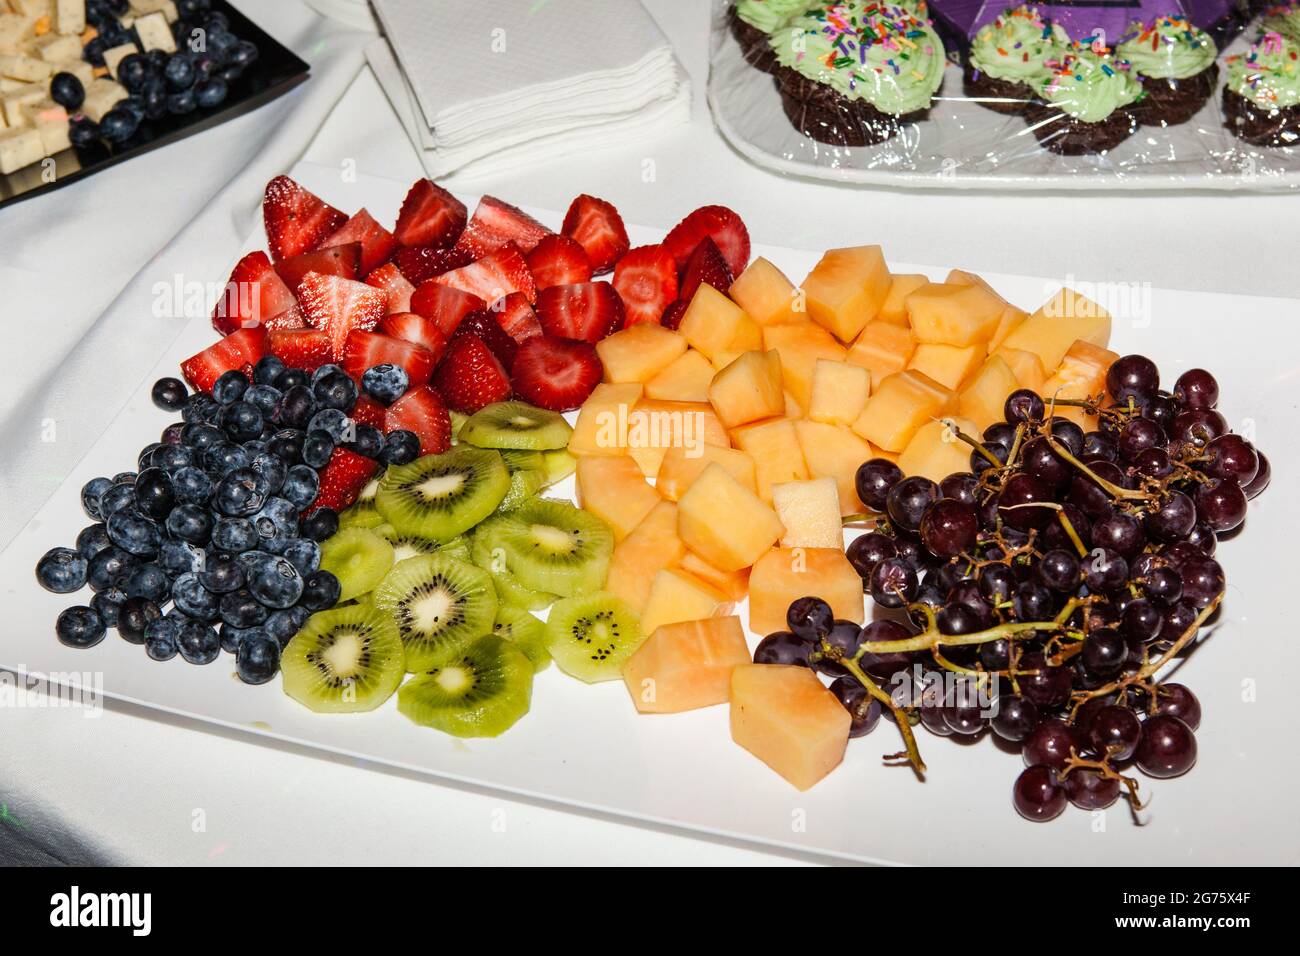 An arrangement of fruit on a platter Stock Photo